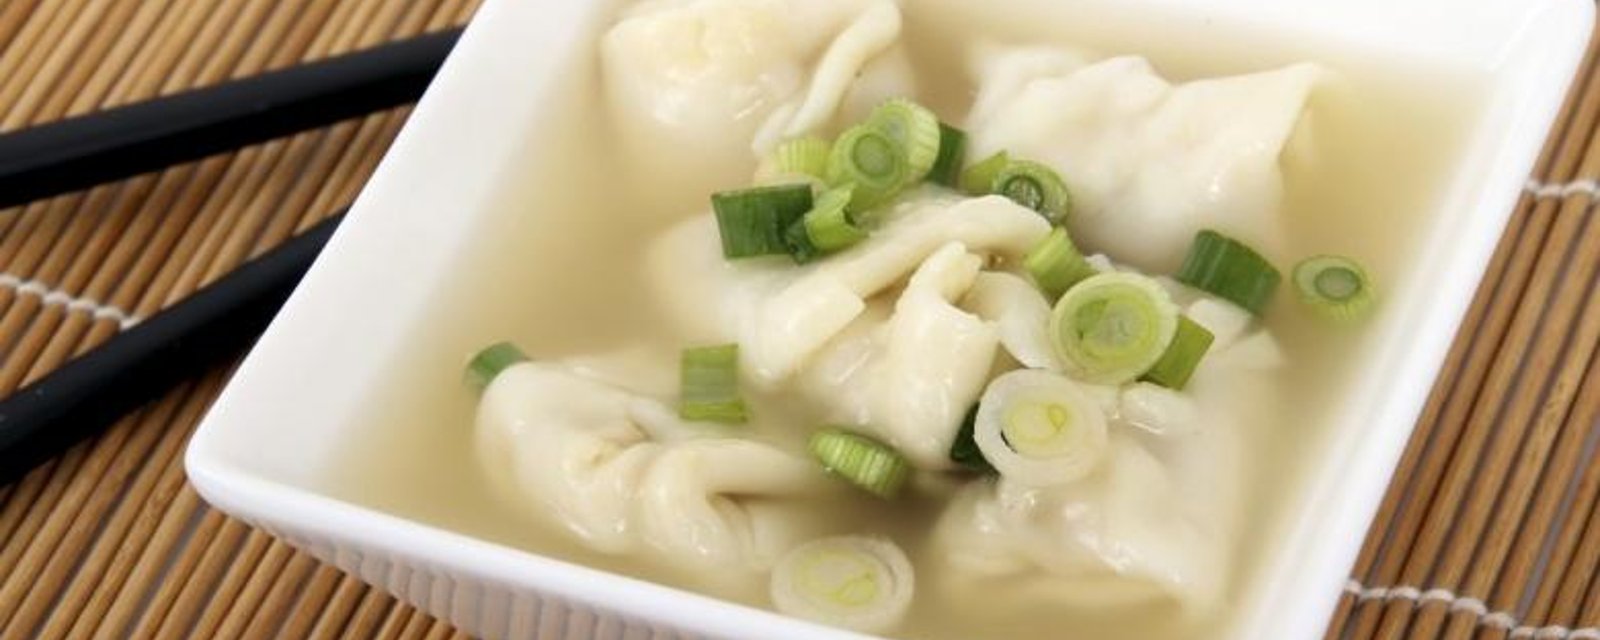 Crevettes et pâte wonton...Découvrez une excellente soupe de raviolis chinois maison